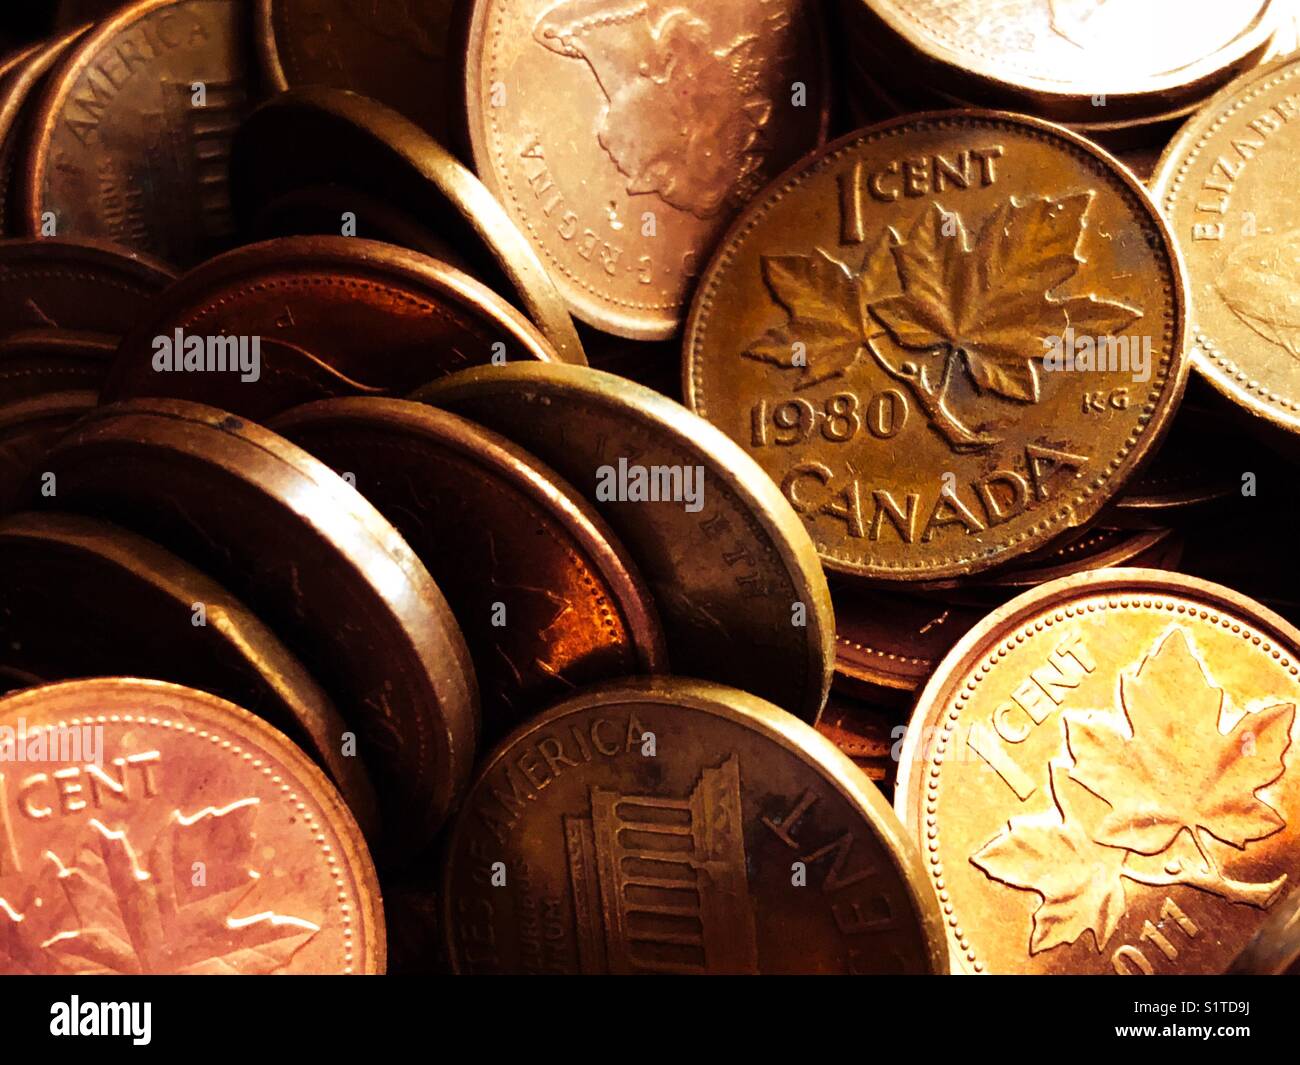 Primer plano de canadienses y americanas de centavos de cobre con el foco en un 1980 Canadá penny Foto de stock